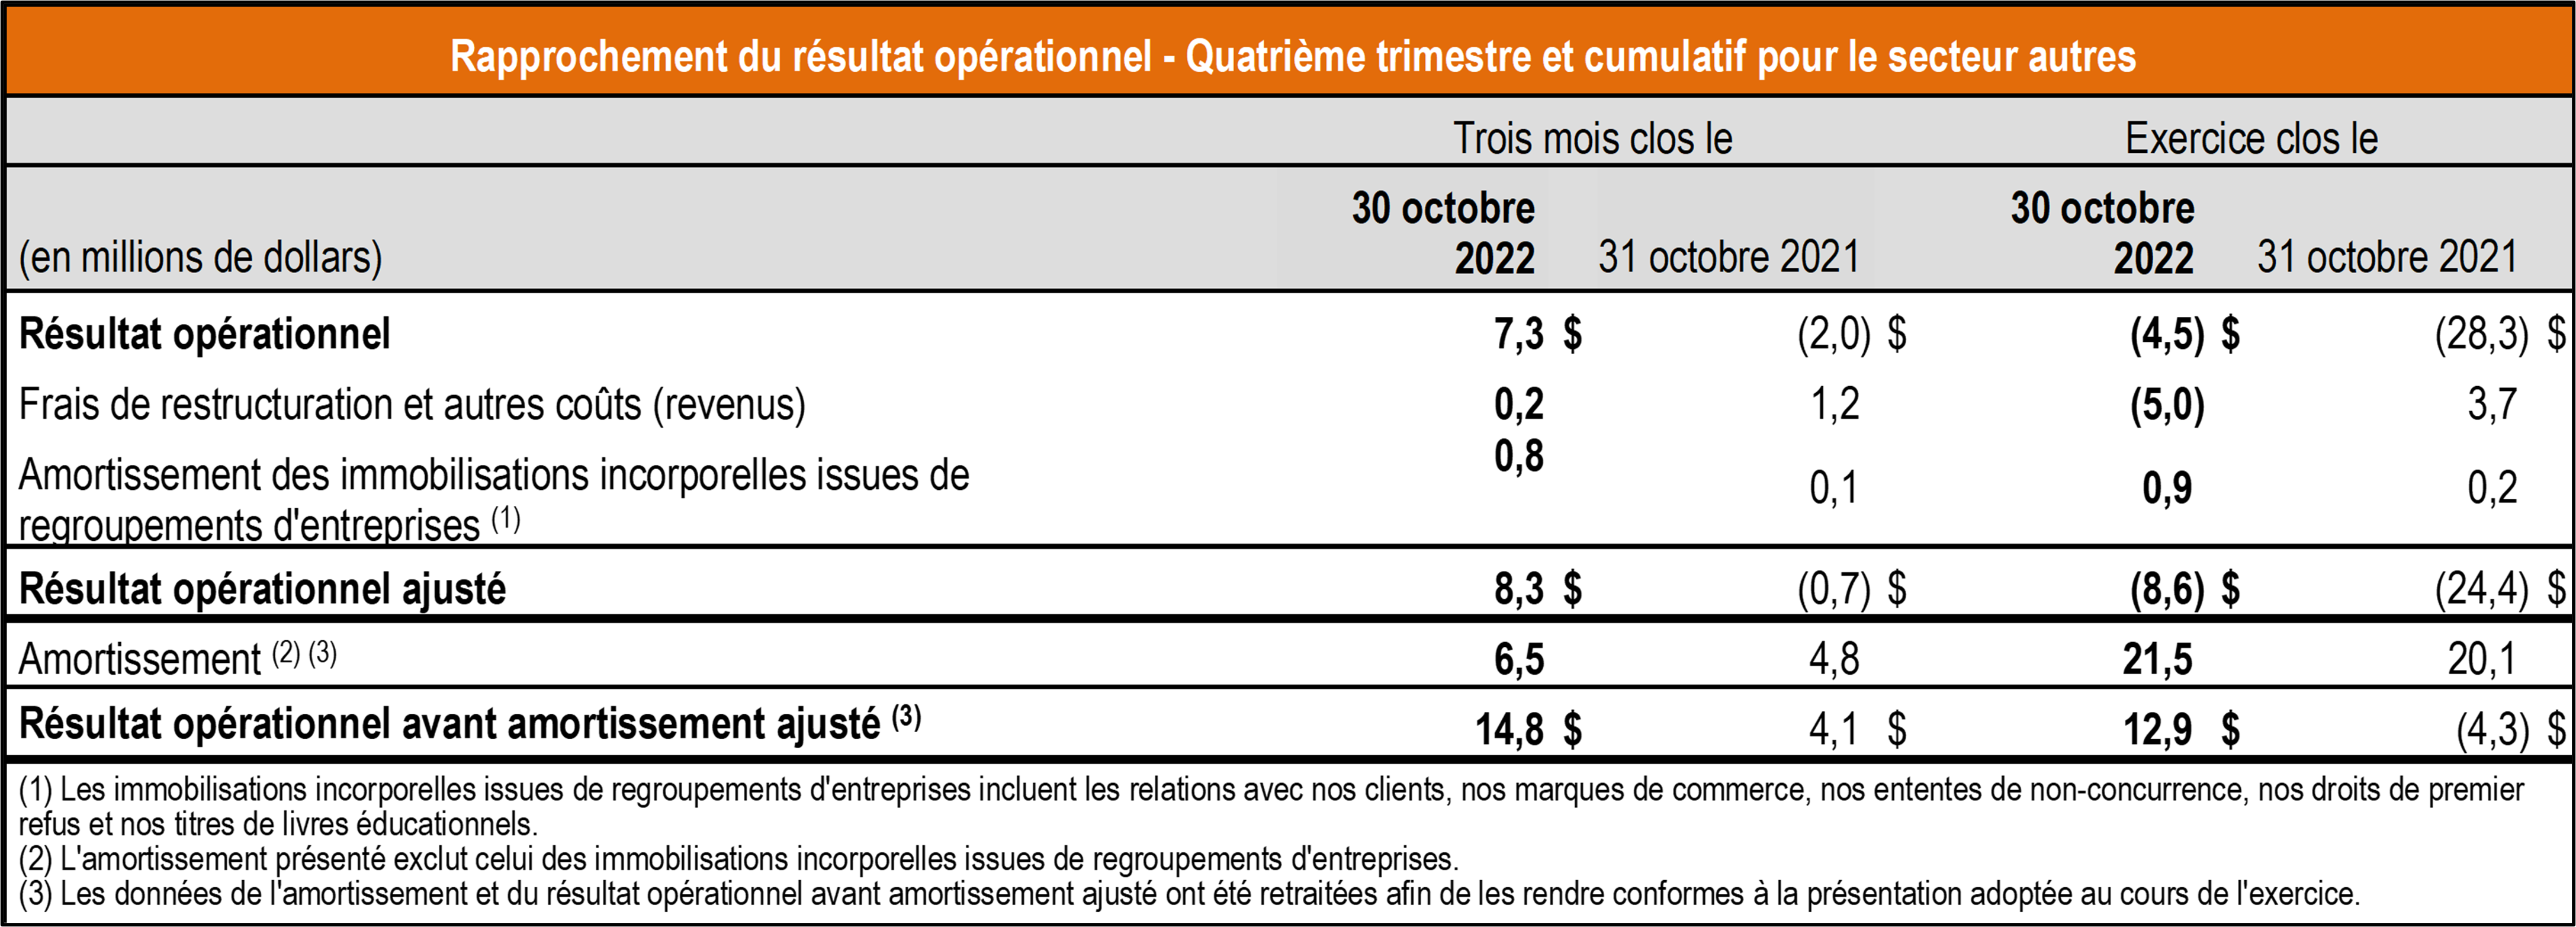 tableau rapprochement resultat operationnel T4 2022 TCL - autres secteurs